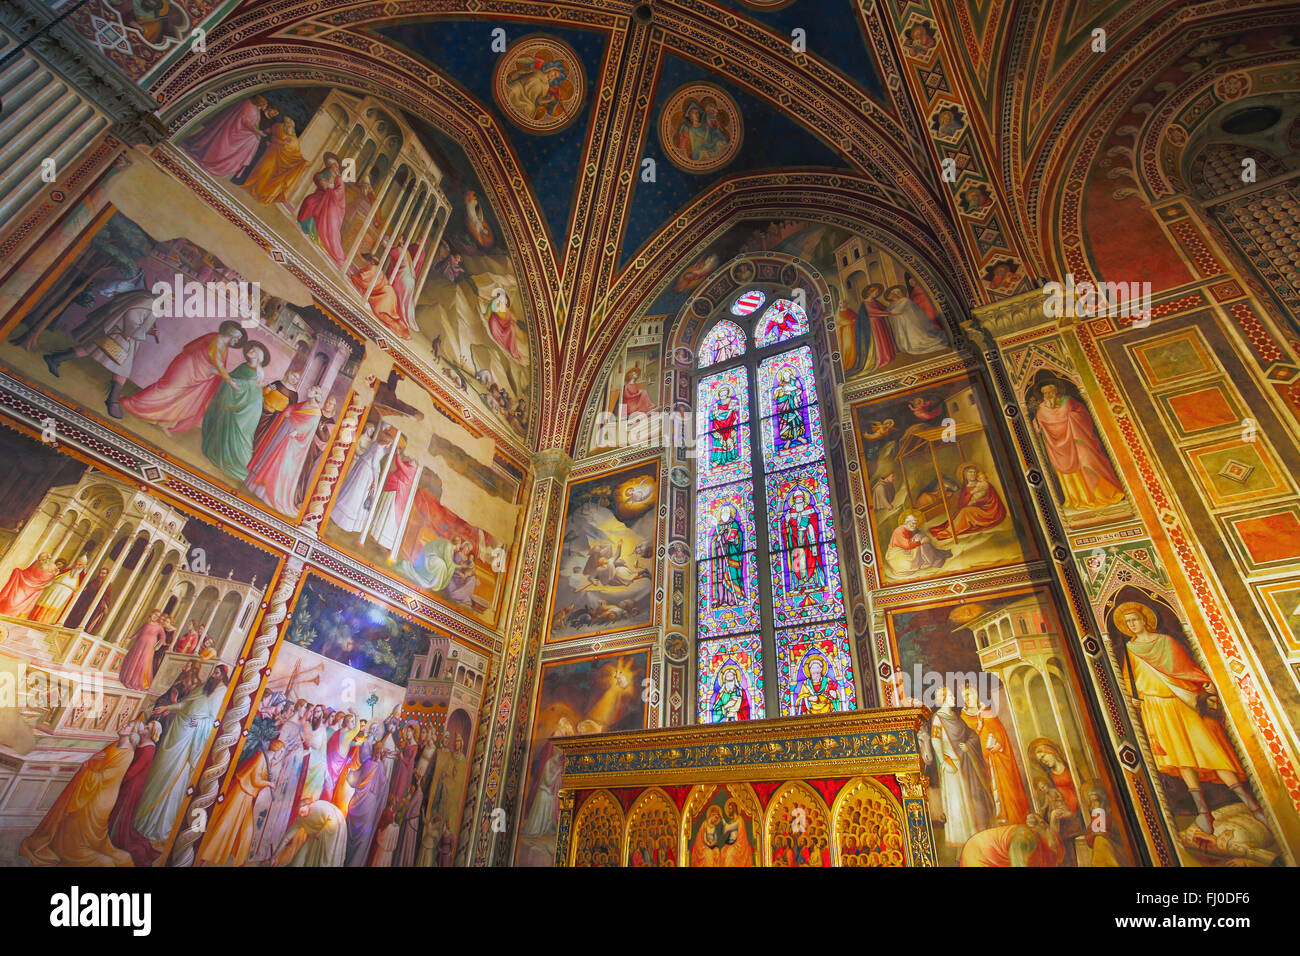 Firenze, Toscana, Italia. La Basilica di Santa Croce. Affreschi e vetrate nella Cappella Baroncelli da Taddeo Gaddi Foto Stock